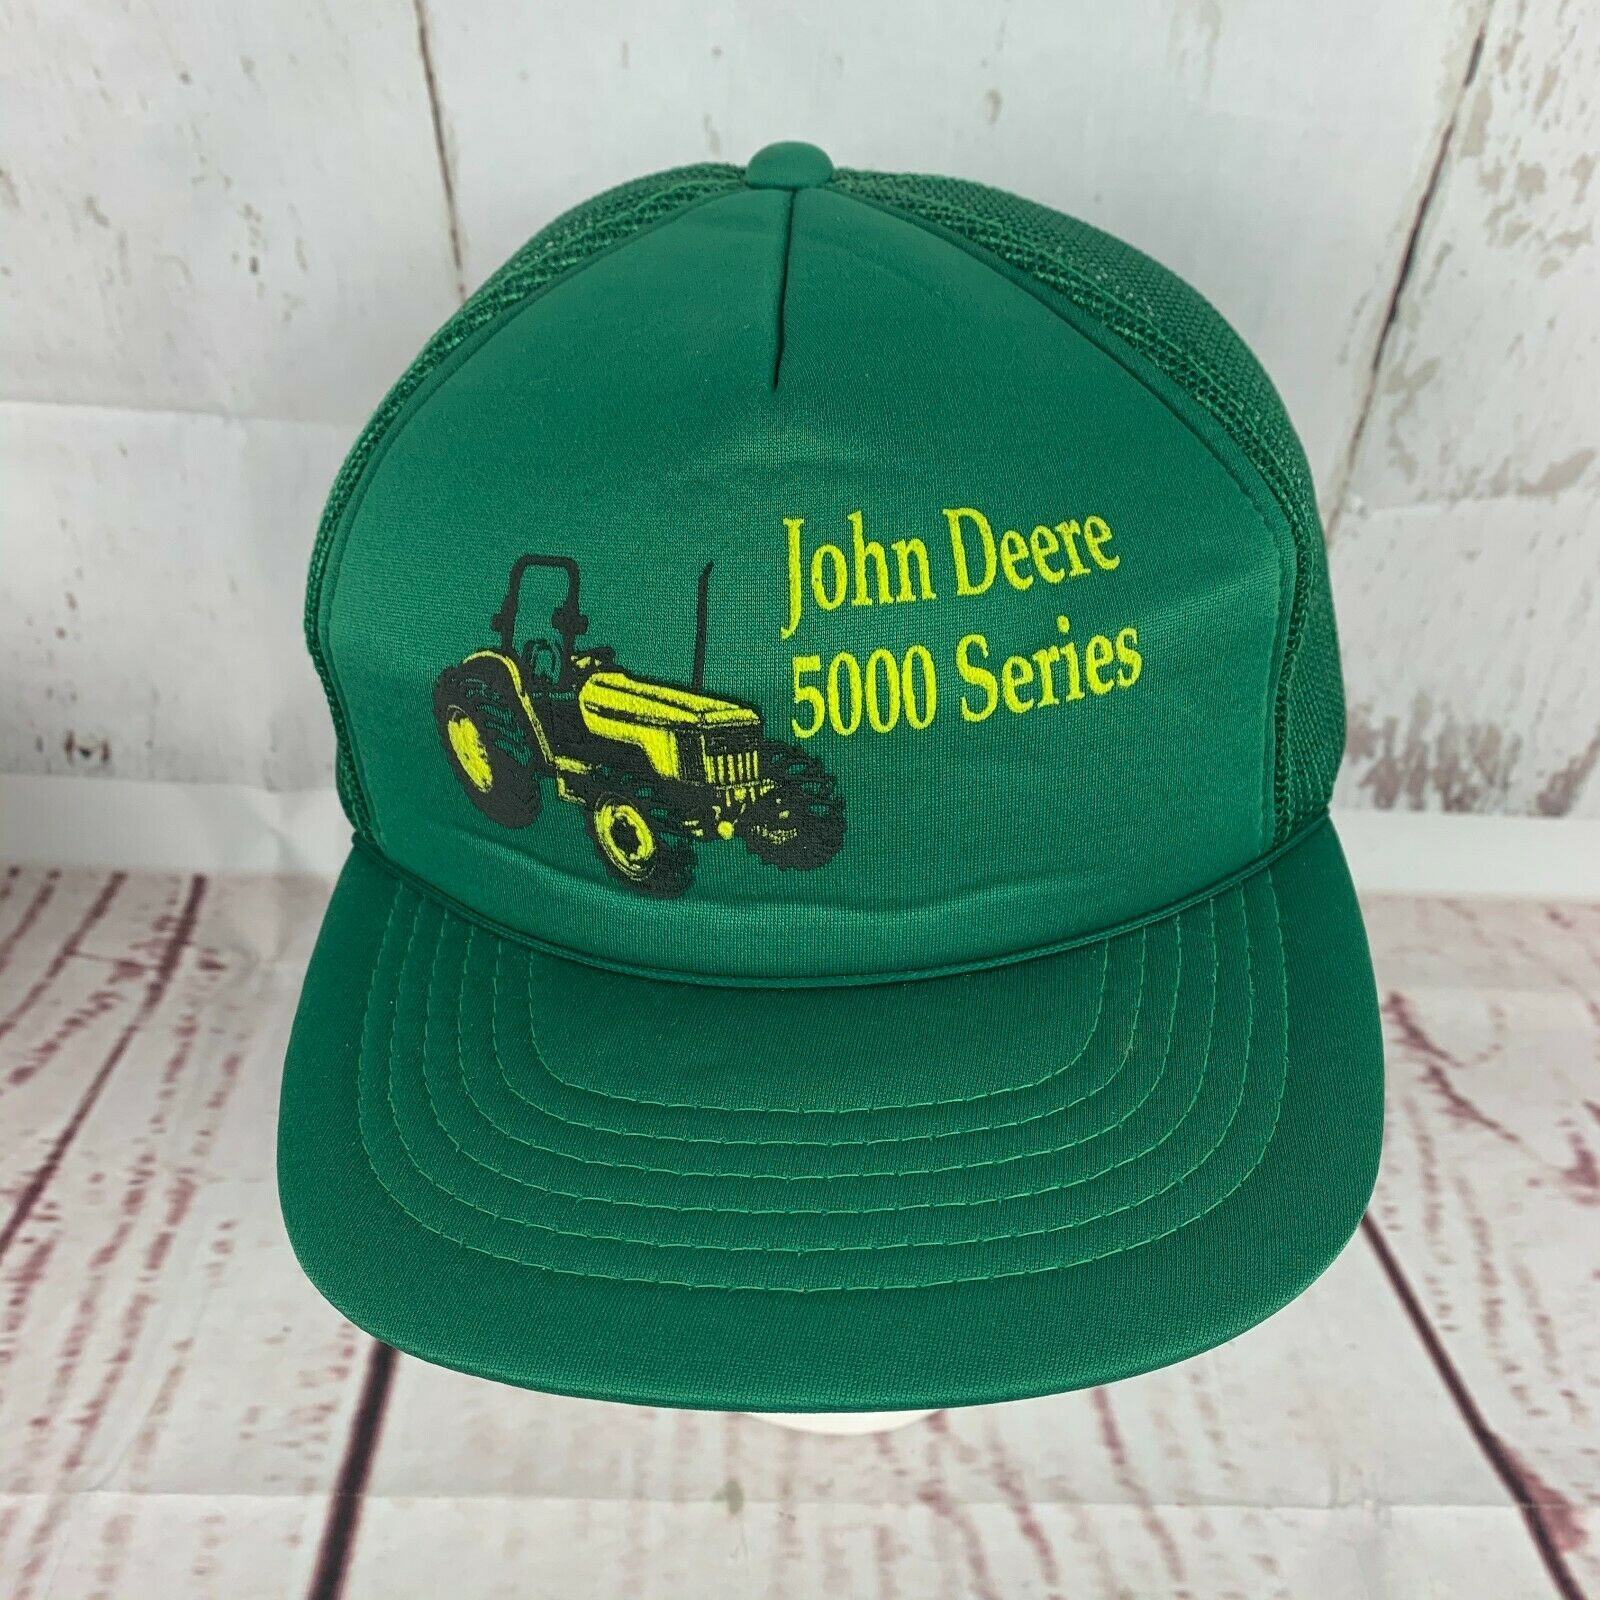 Vintage John Deere 5000 Series Tractor Green Trucker Hat - Hats